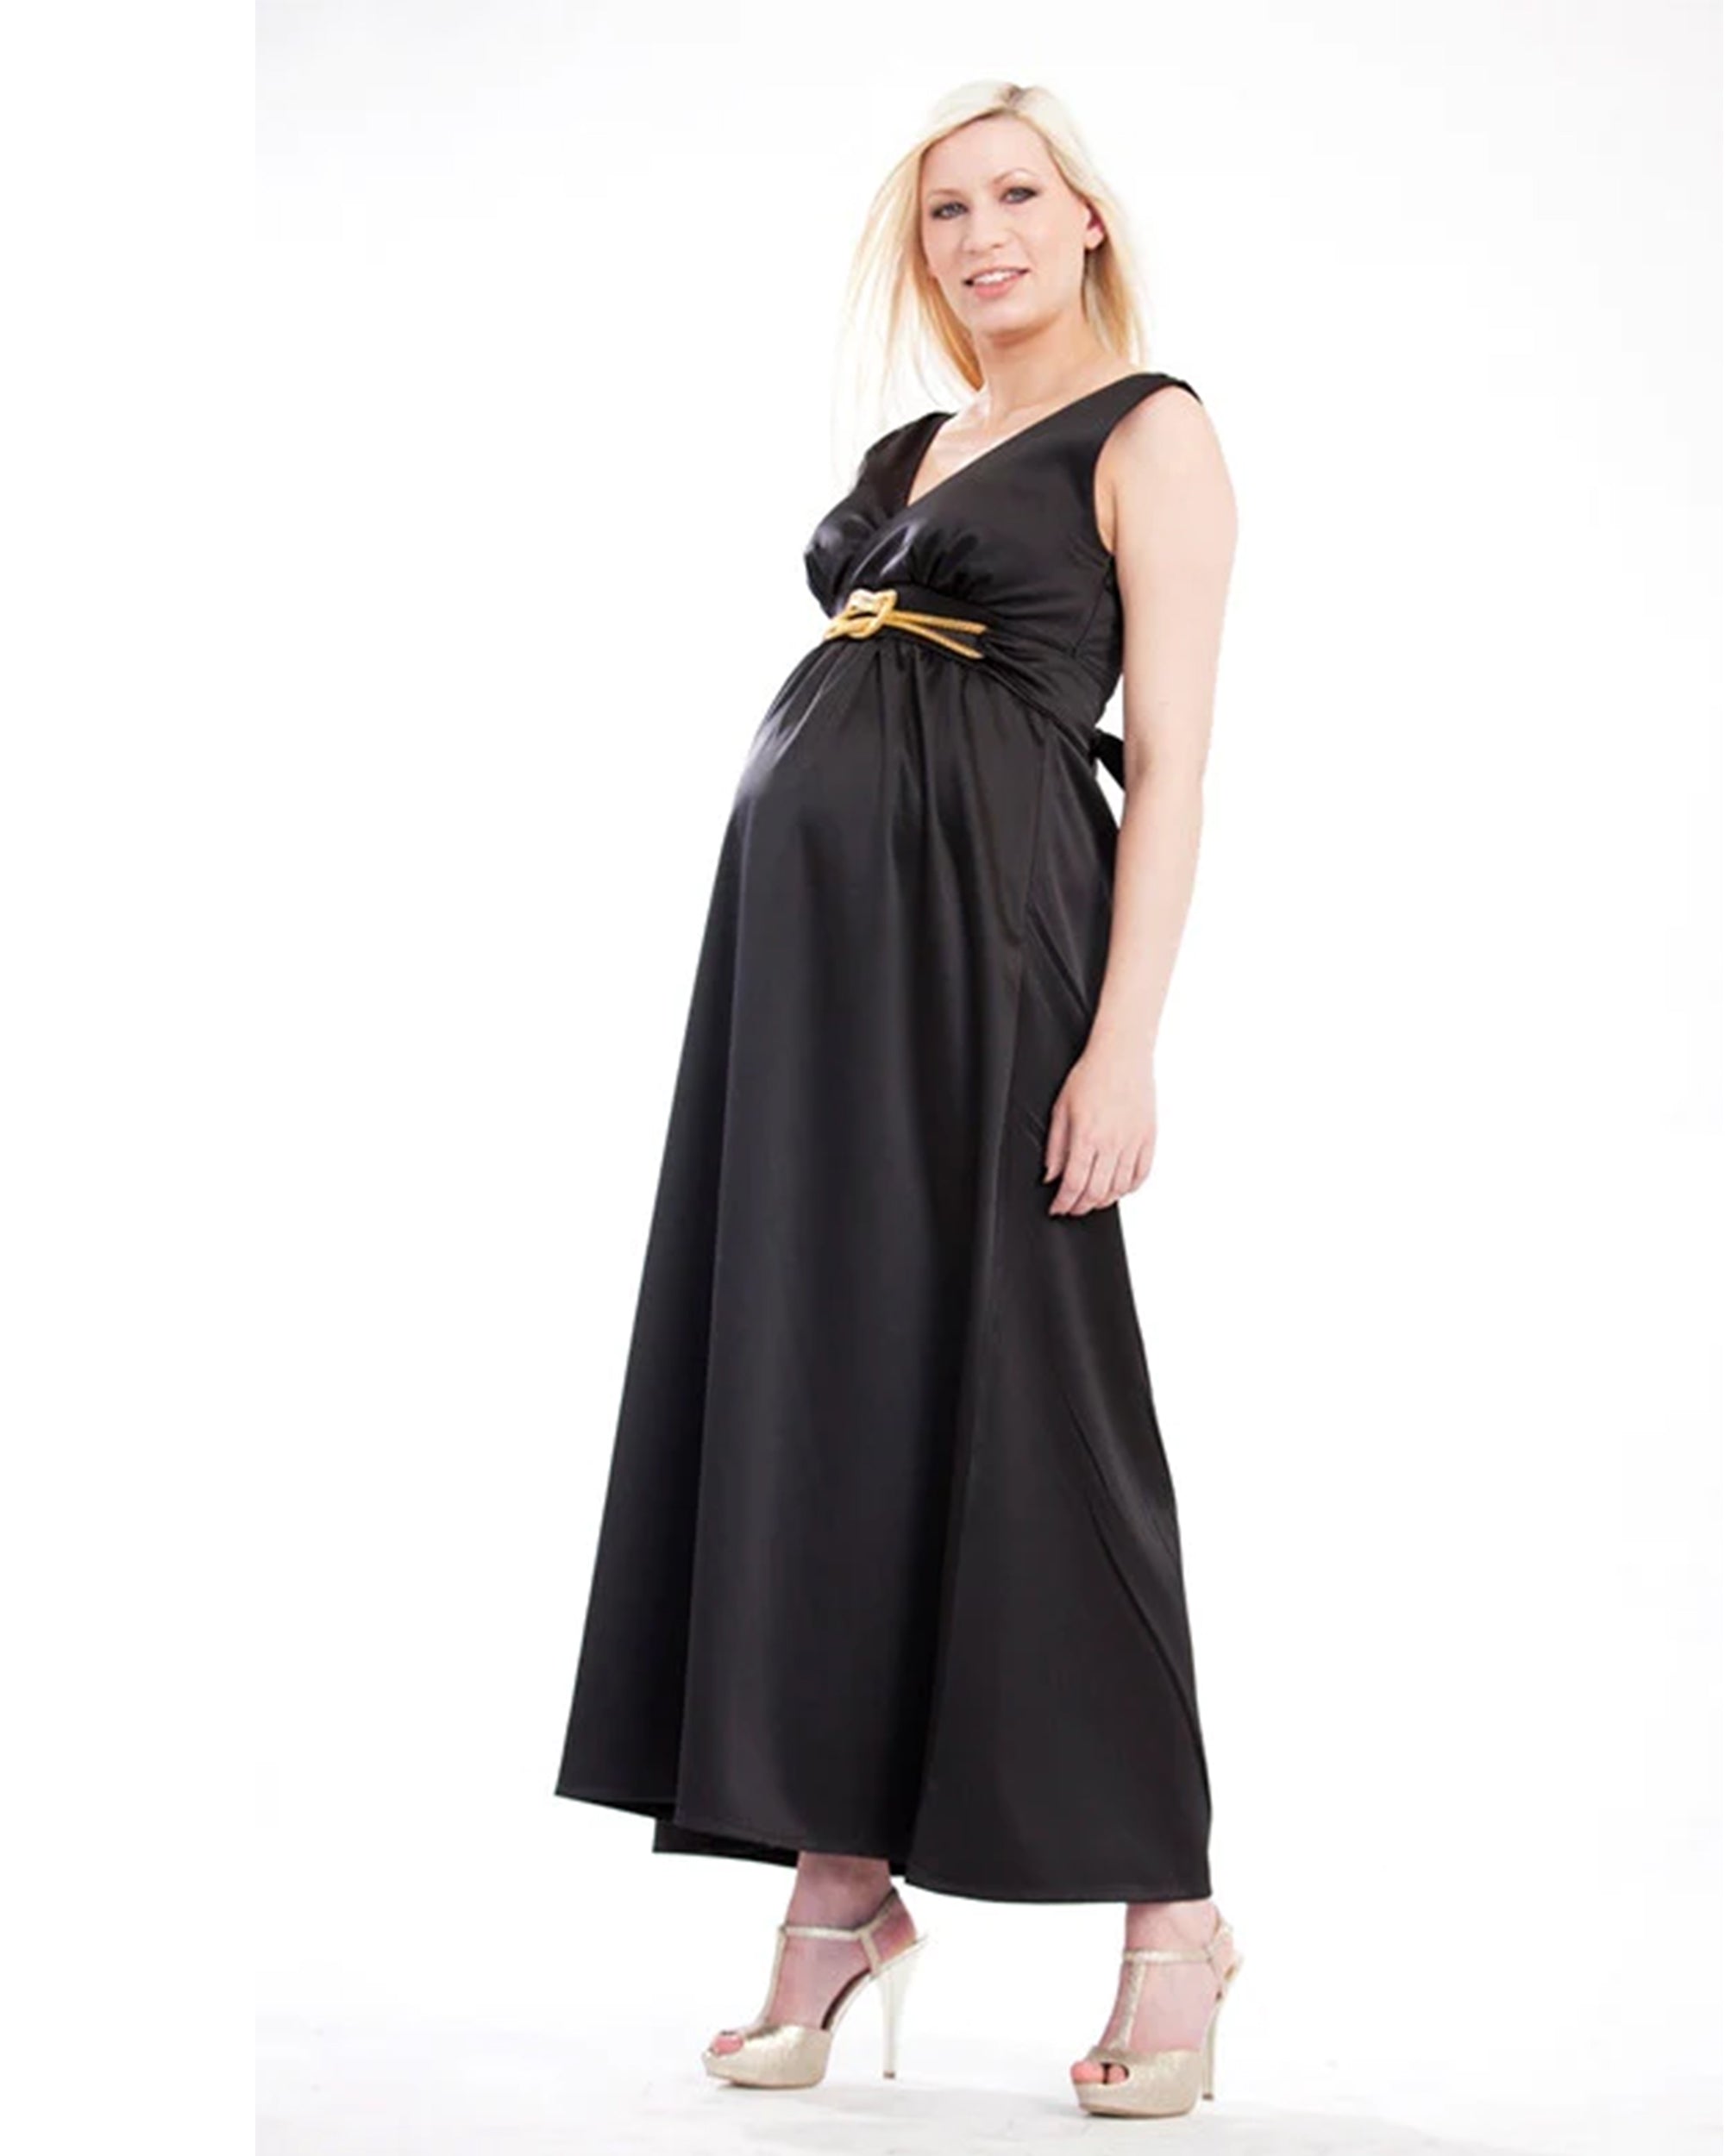 Charlotte Devereux 'Goddess' Maternity Formal Dress - Black